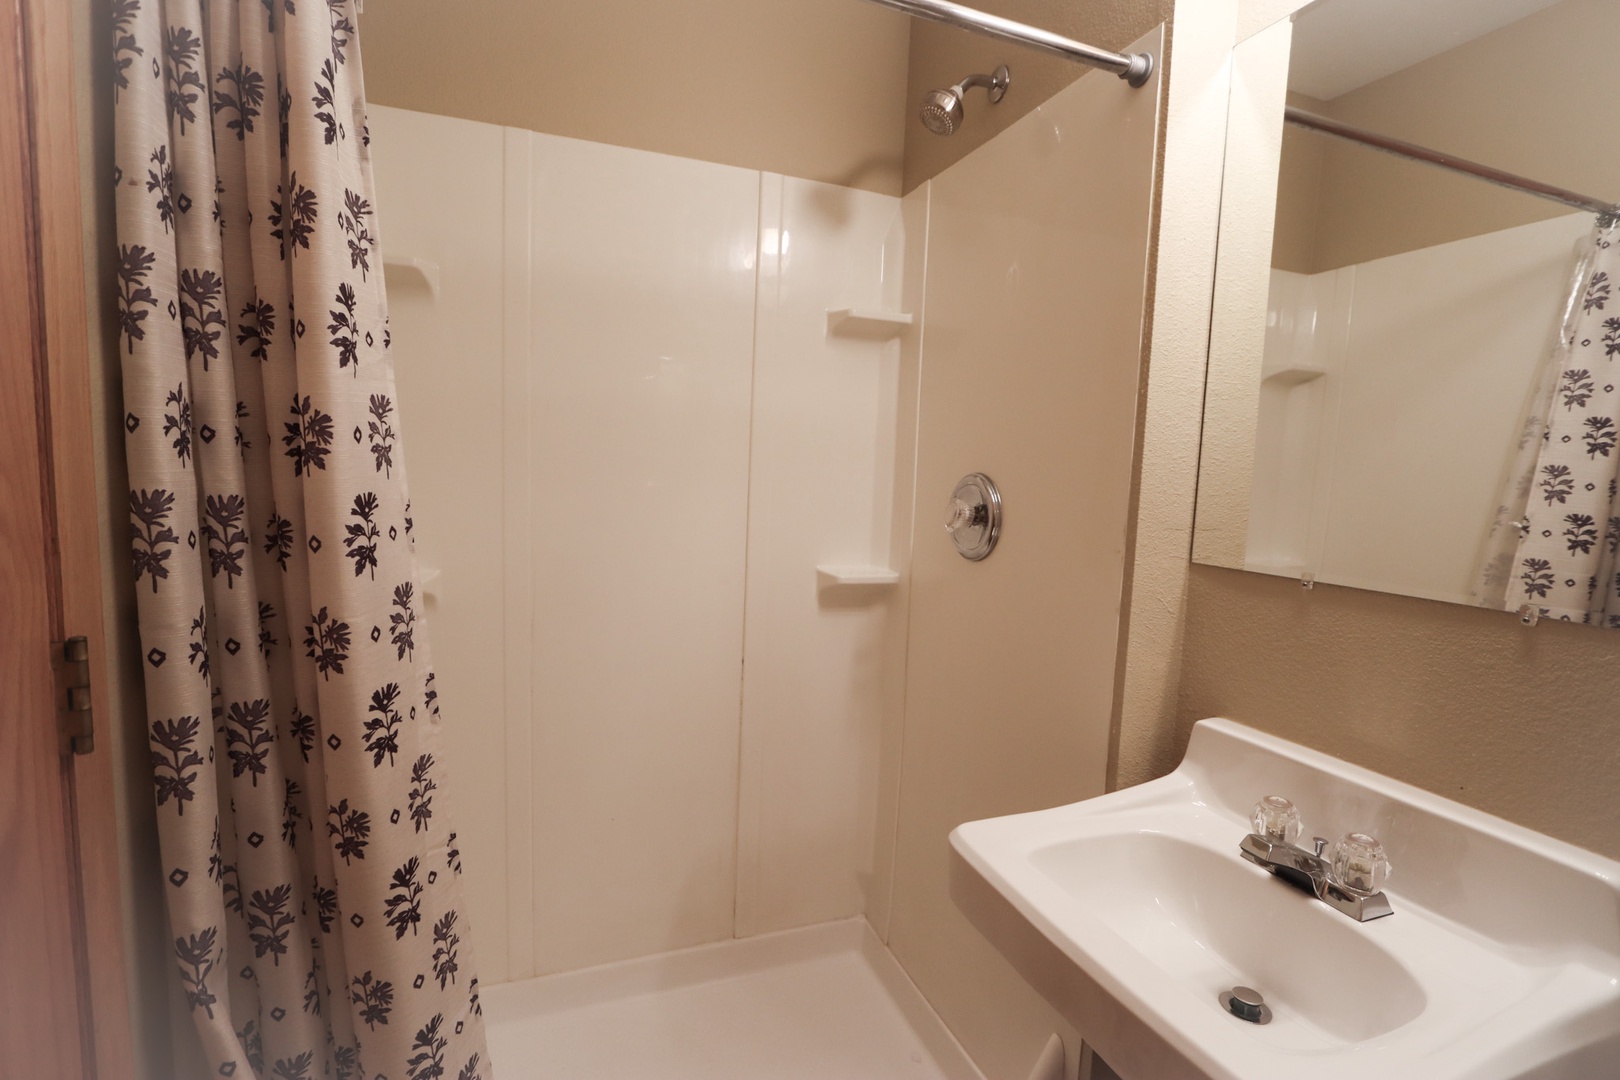 The queen en suite includes a single vanity & walk-in shower